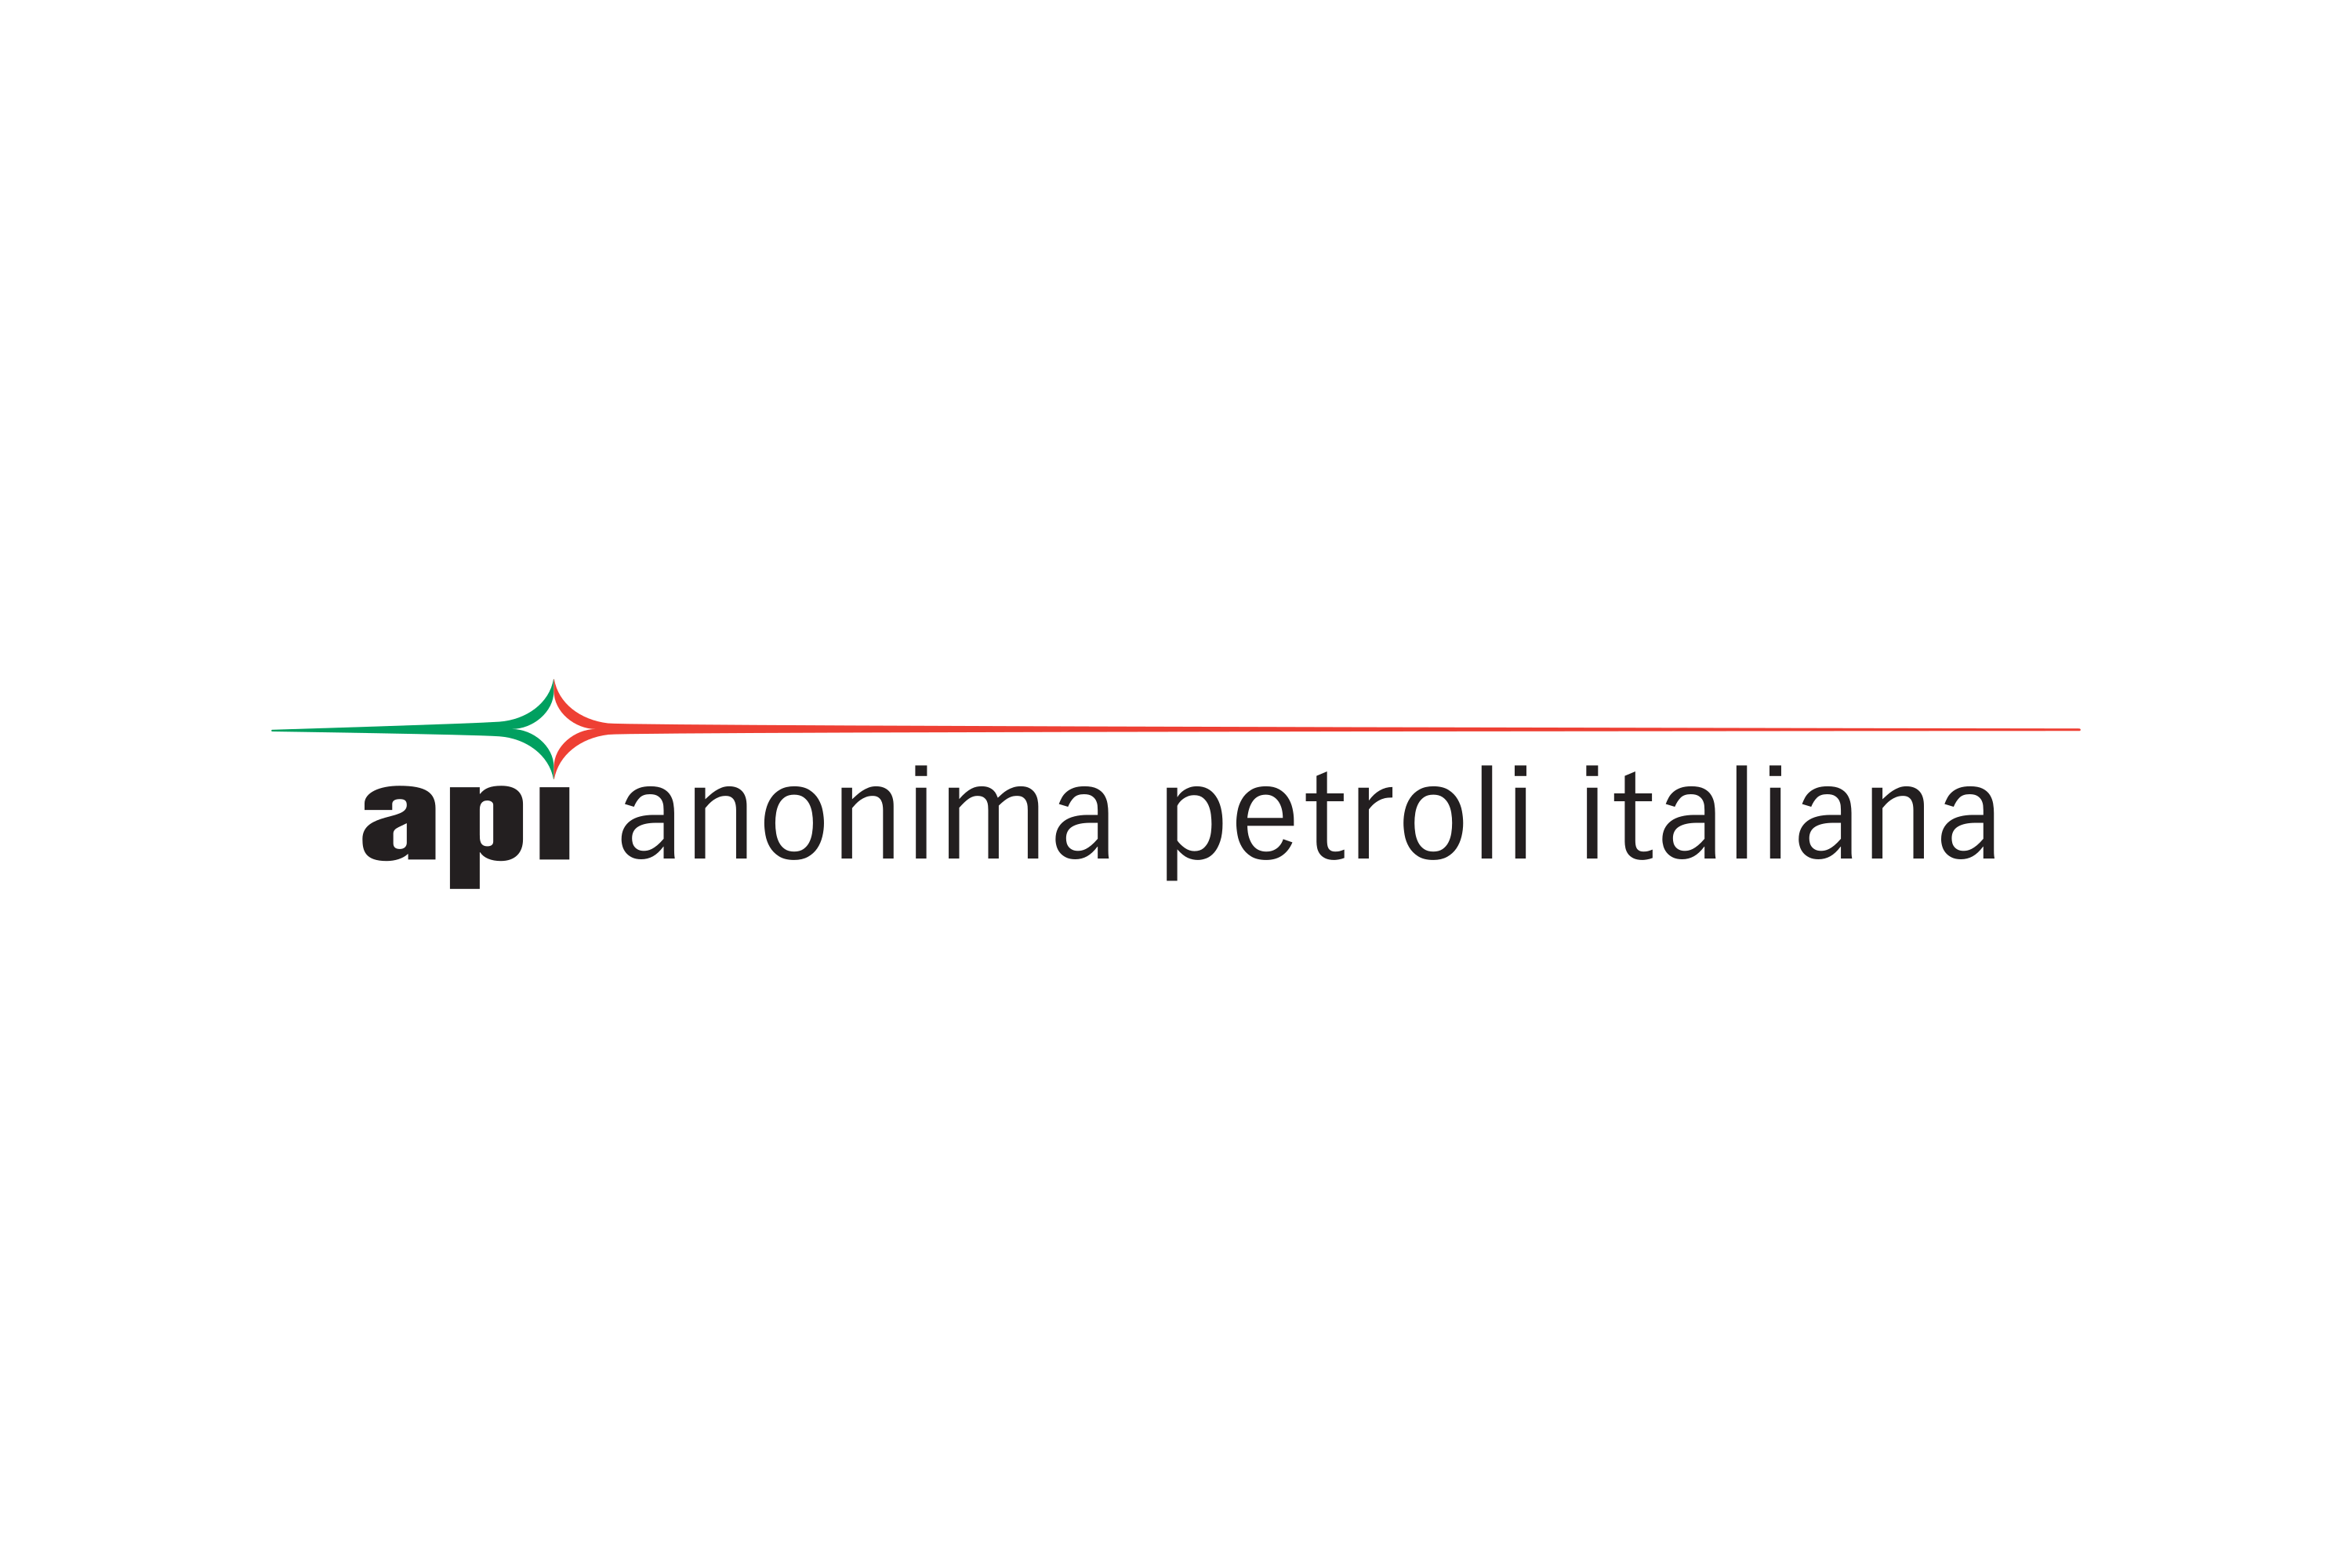 Anonima Petroli Italiana Logo